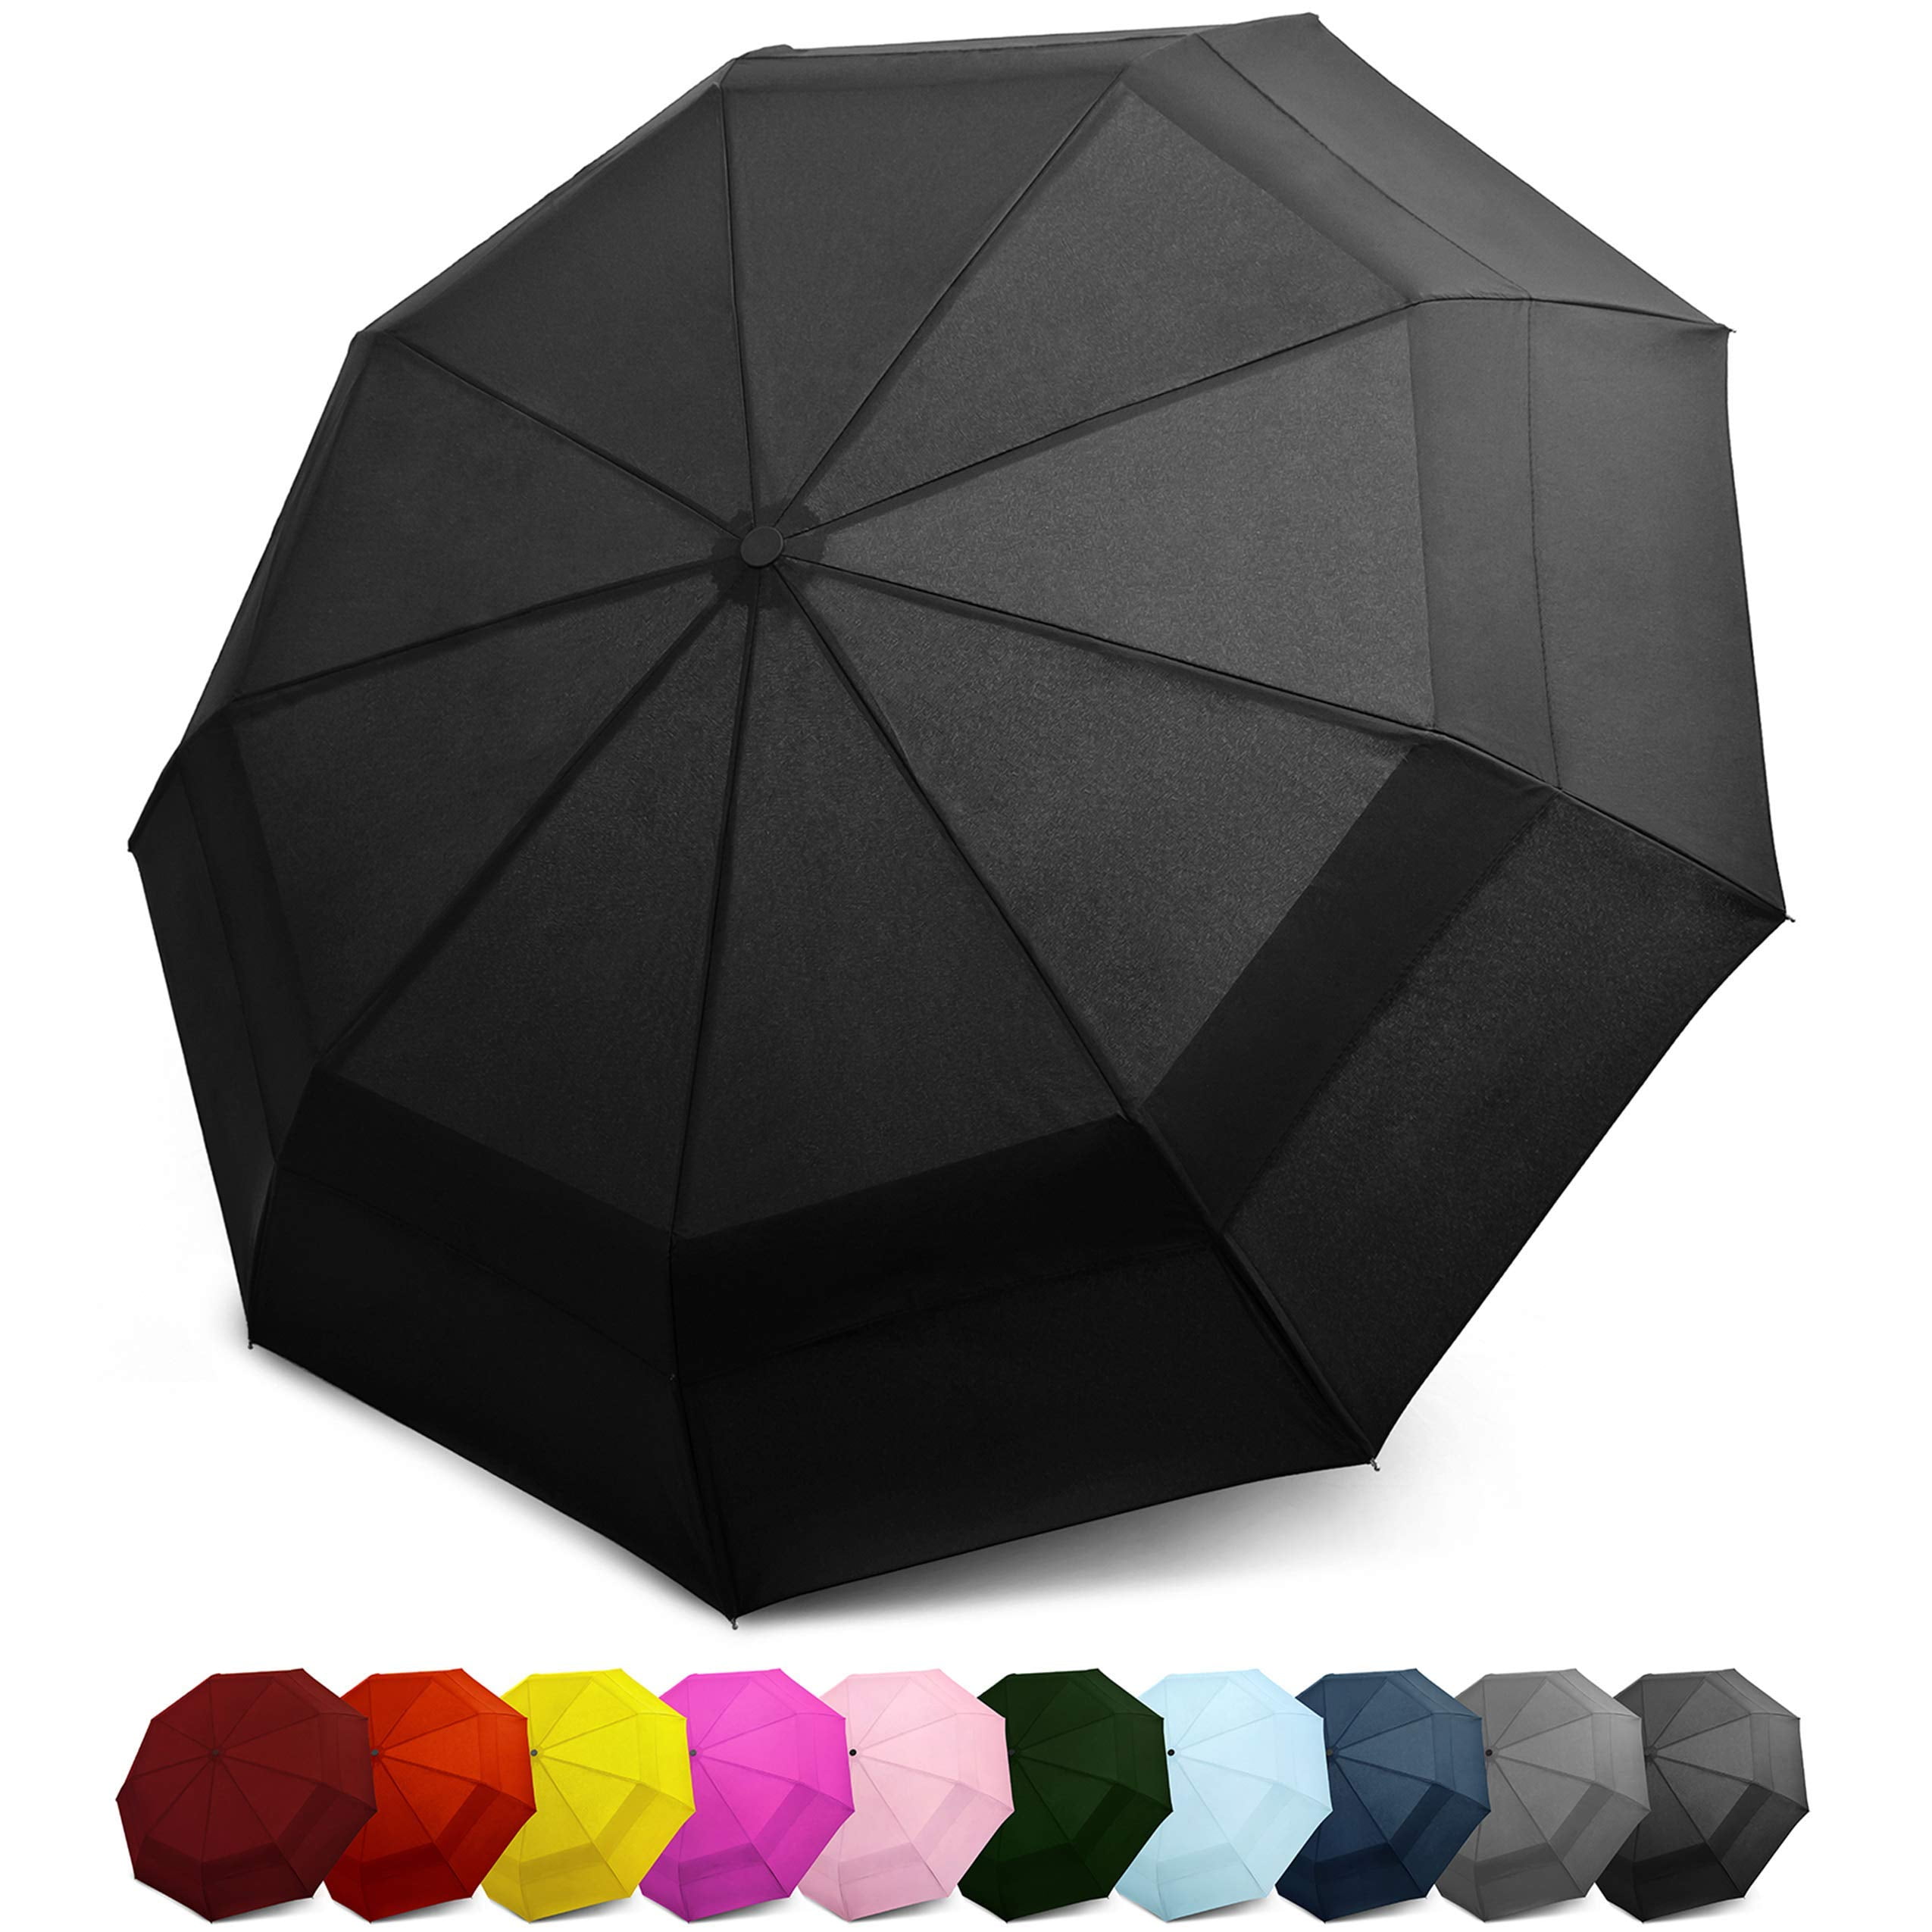 Custom Oklahoma State Flag Compact Travel Windproof Rainproof Foldable Umbrella